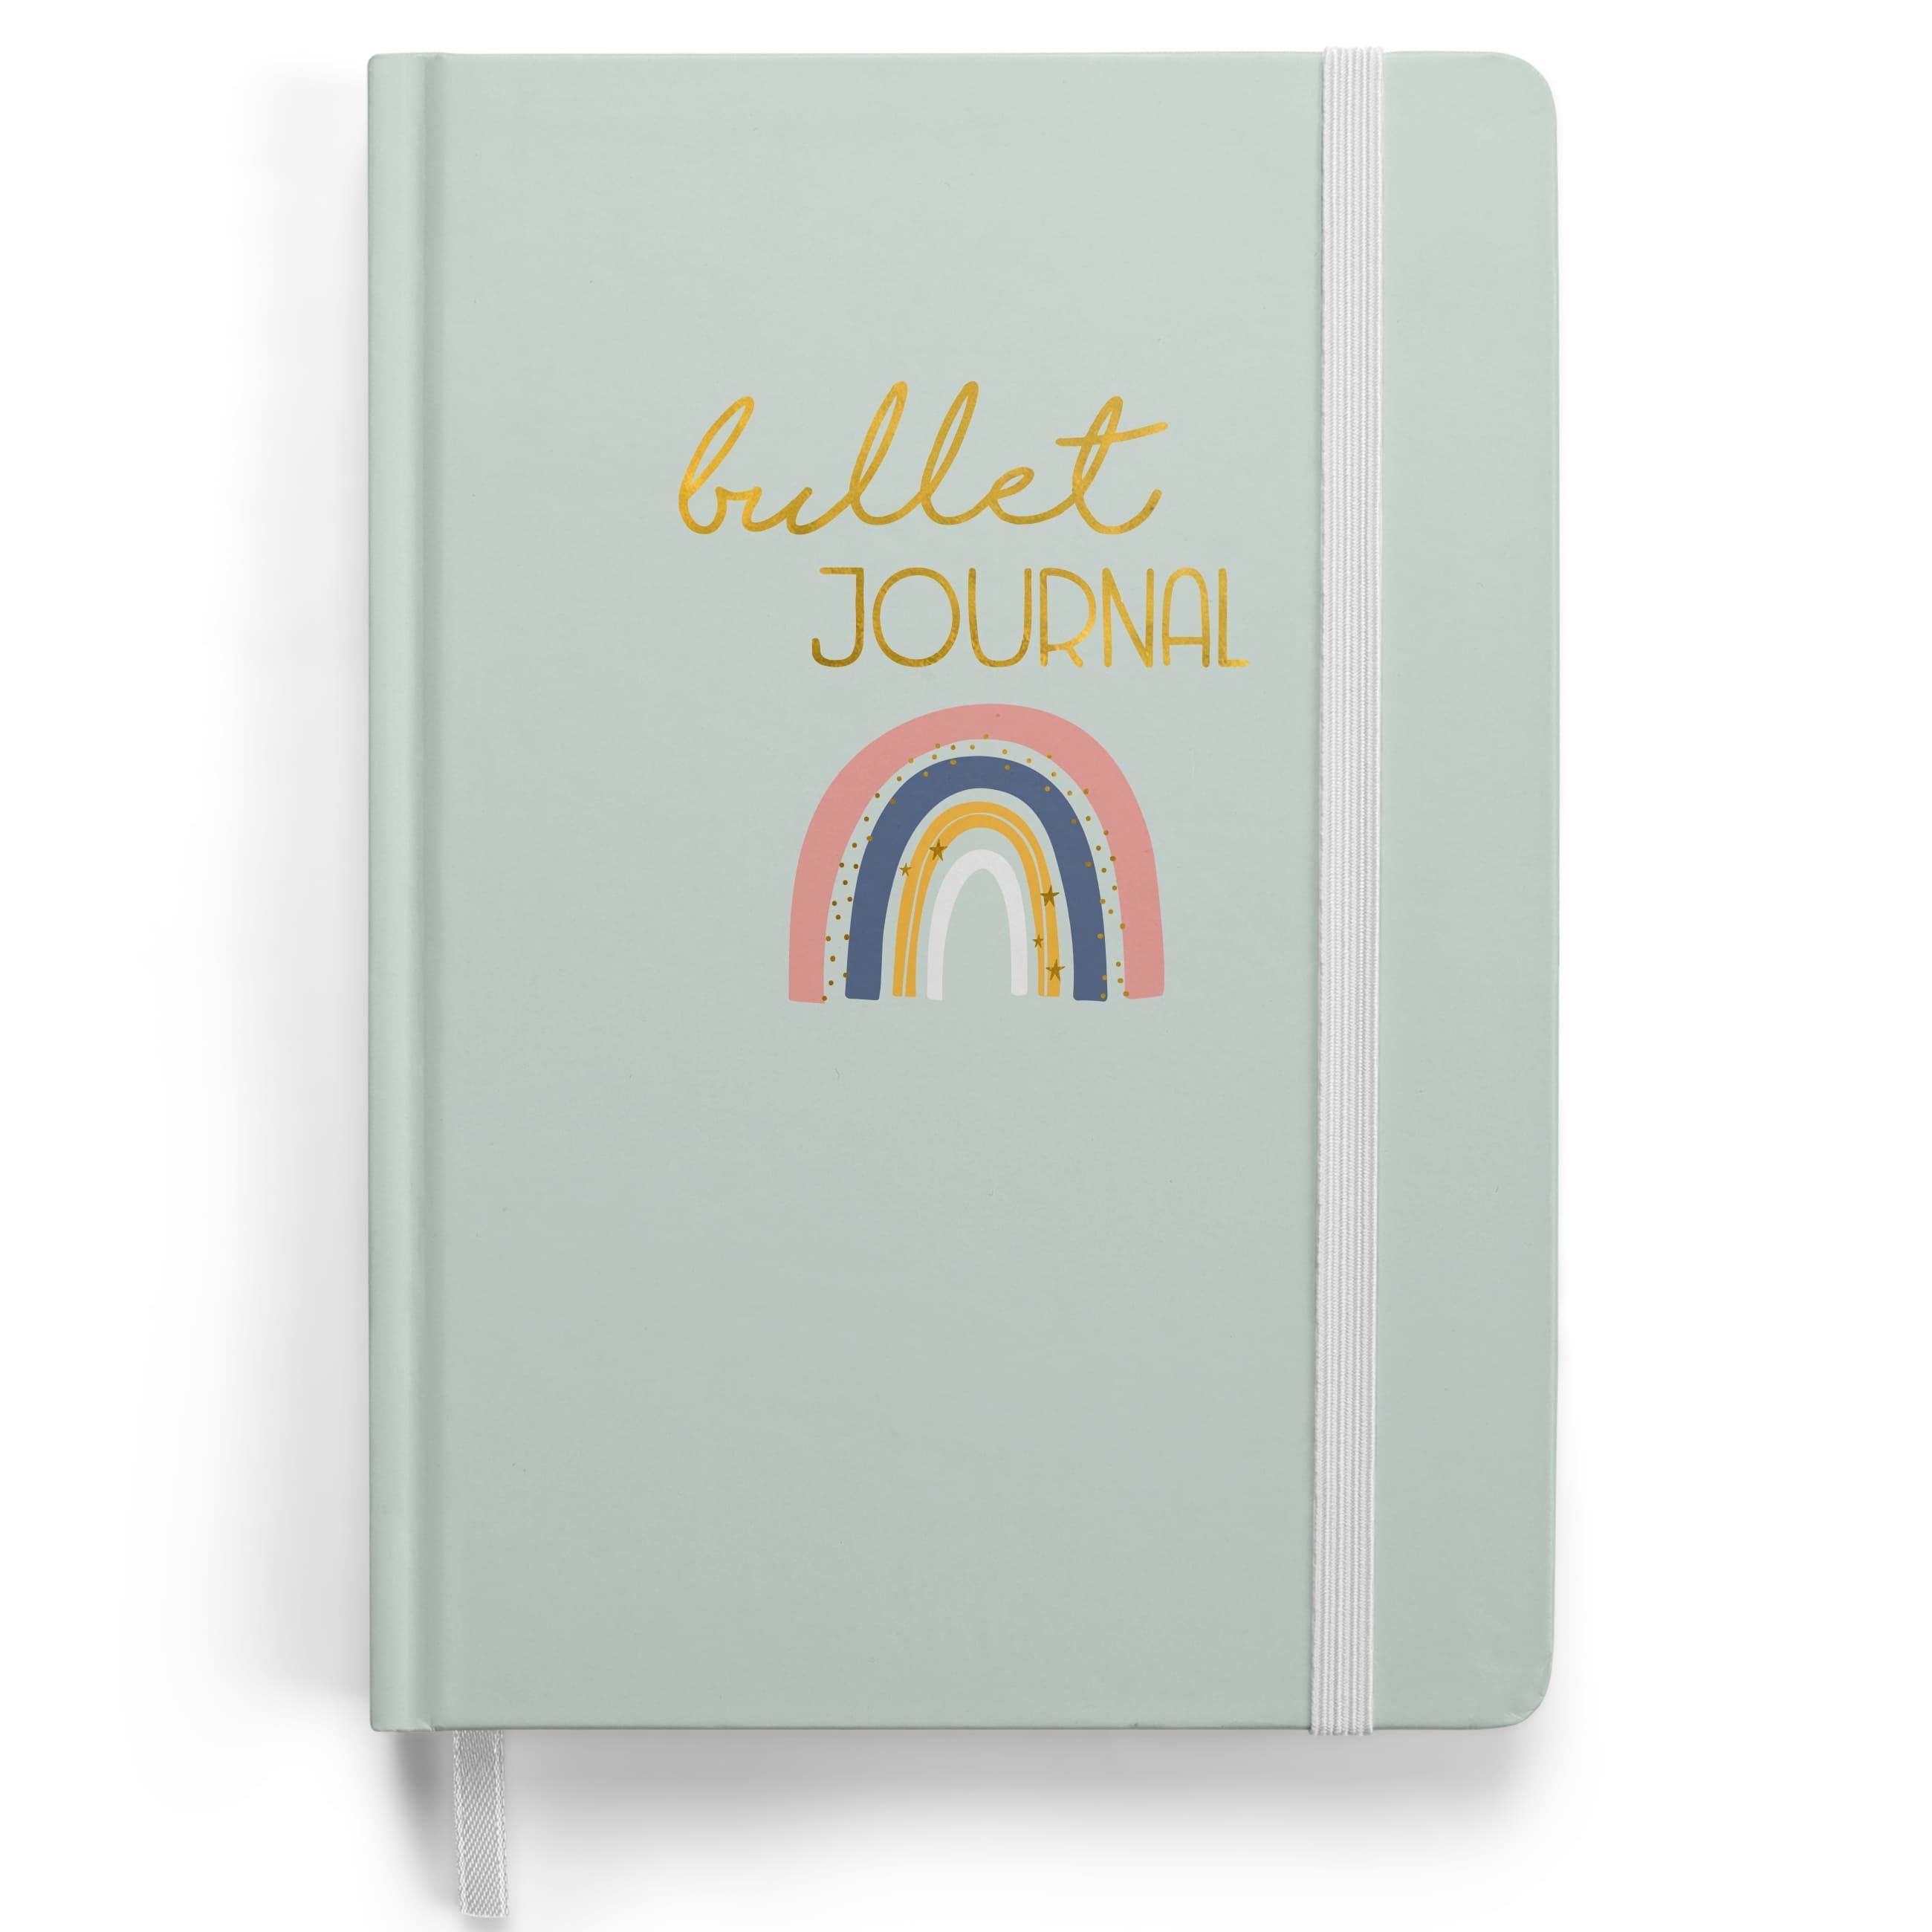 PAPIERDRACHEN Notizbuch Bullet Journal - Notizbuch A5 gepunktet, mit Punkteraster Regenbogen